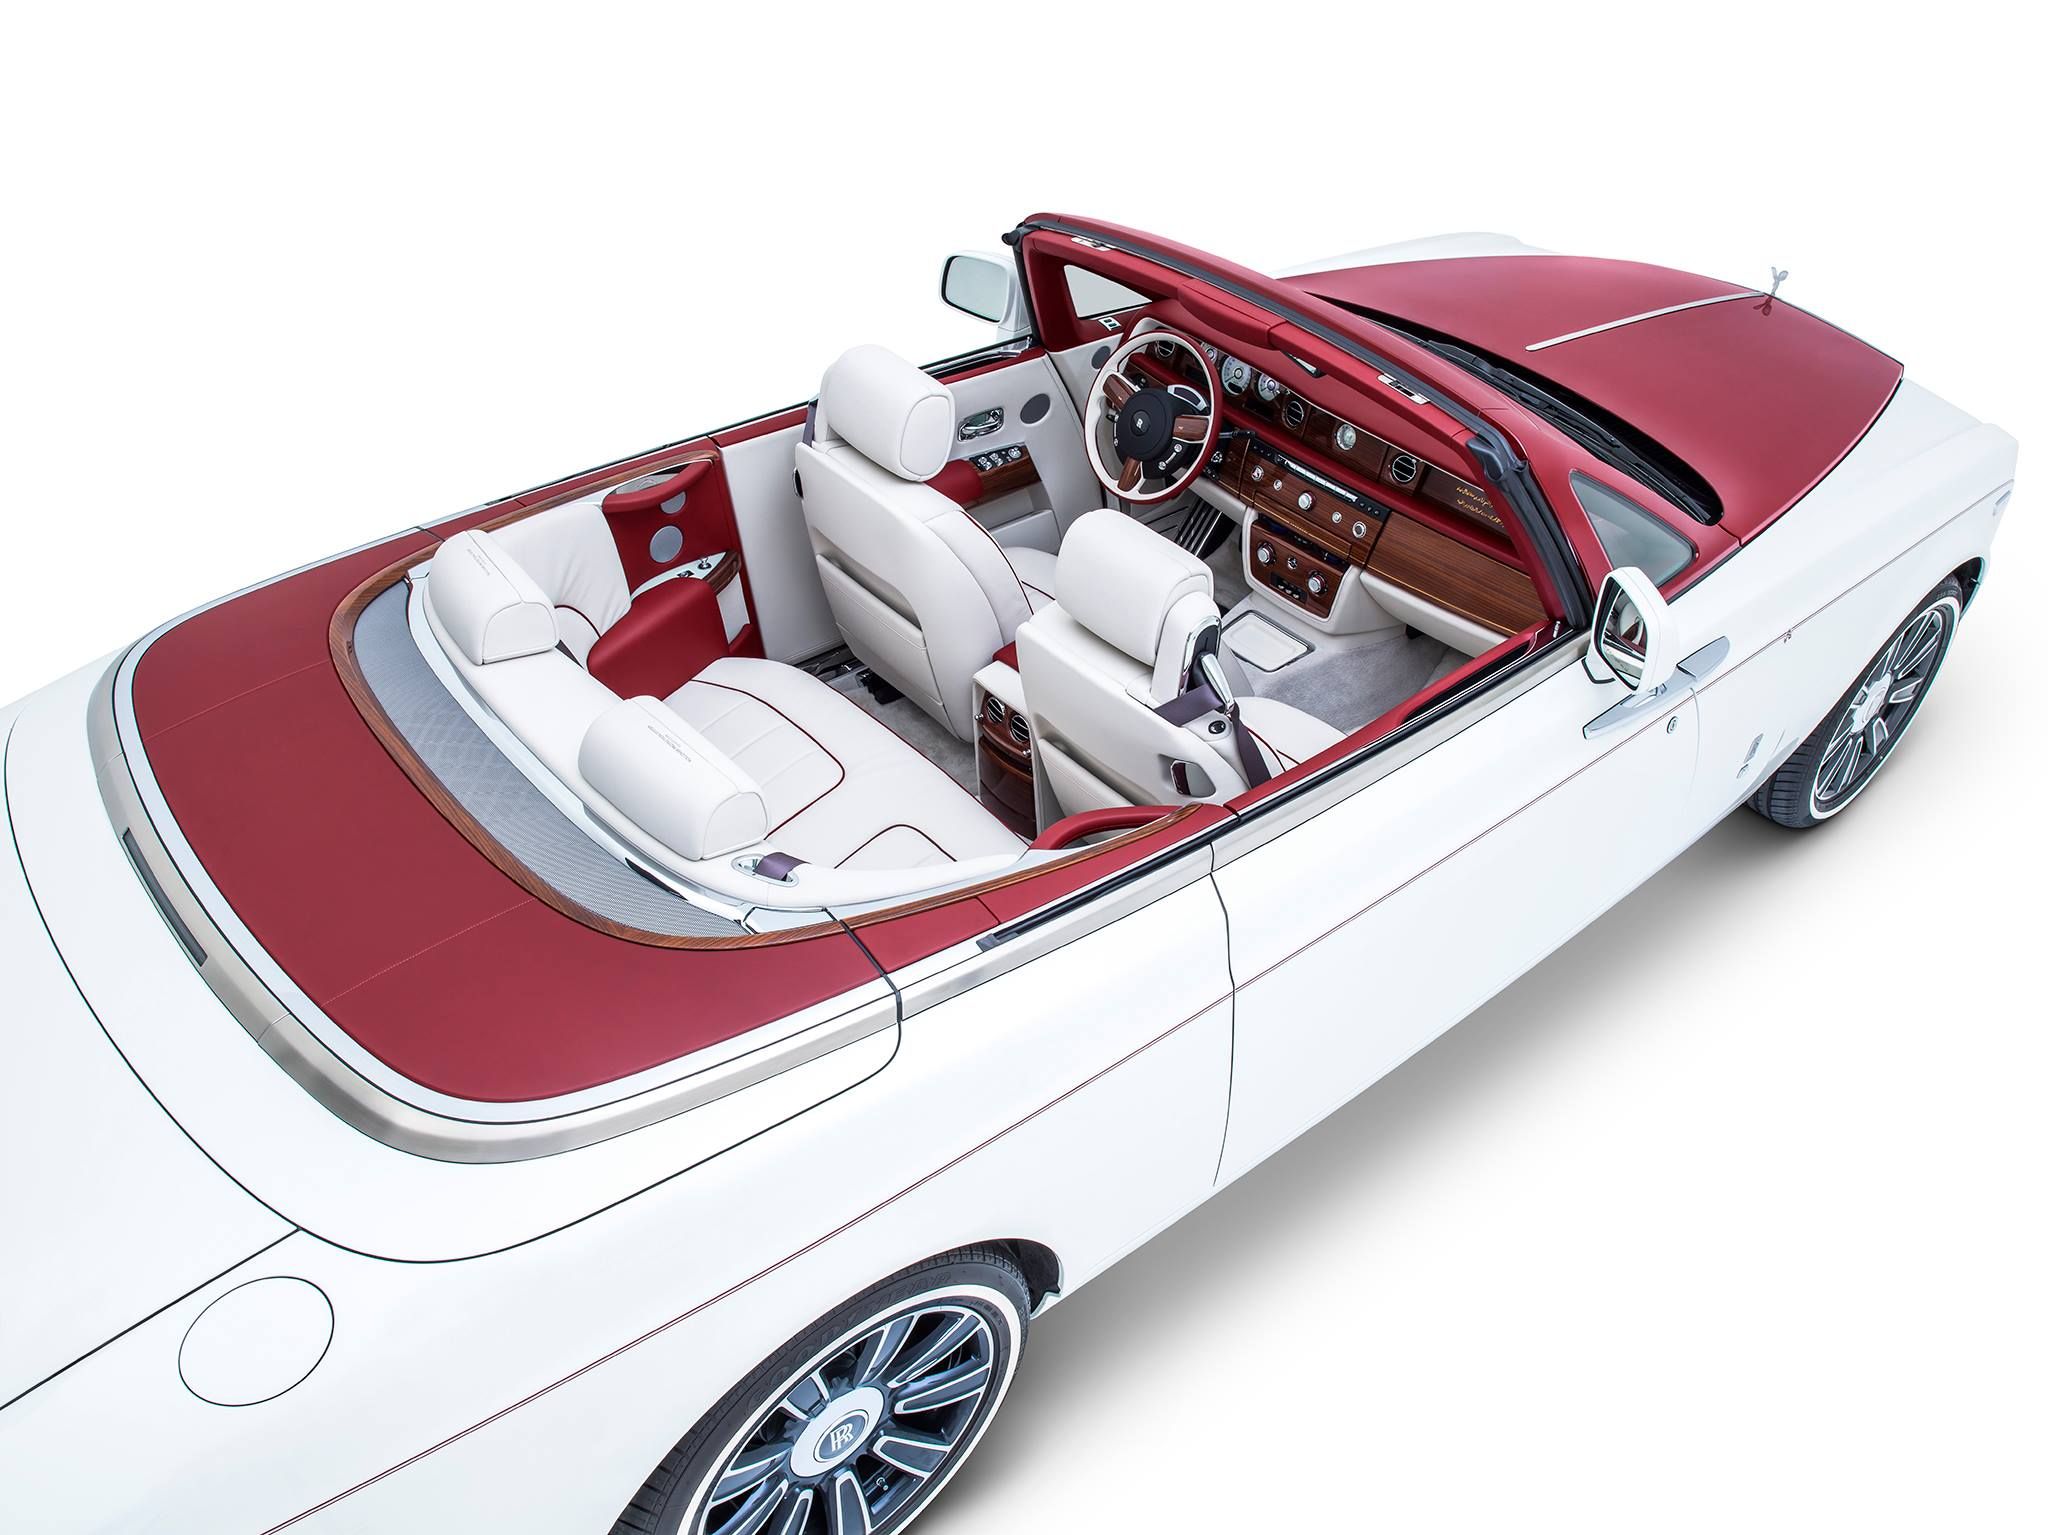 2017 Rolls-Royce Phantom Drophead Coupe Inspired By Desert Rose